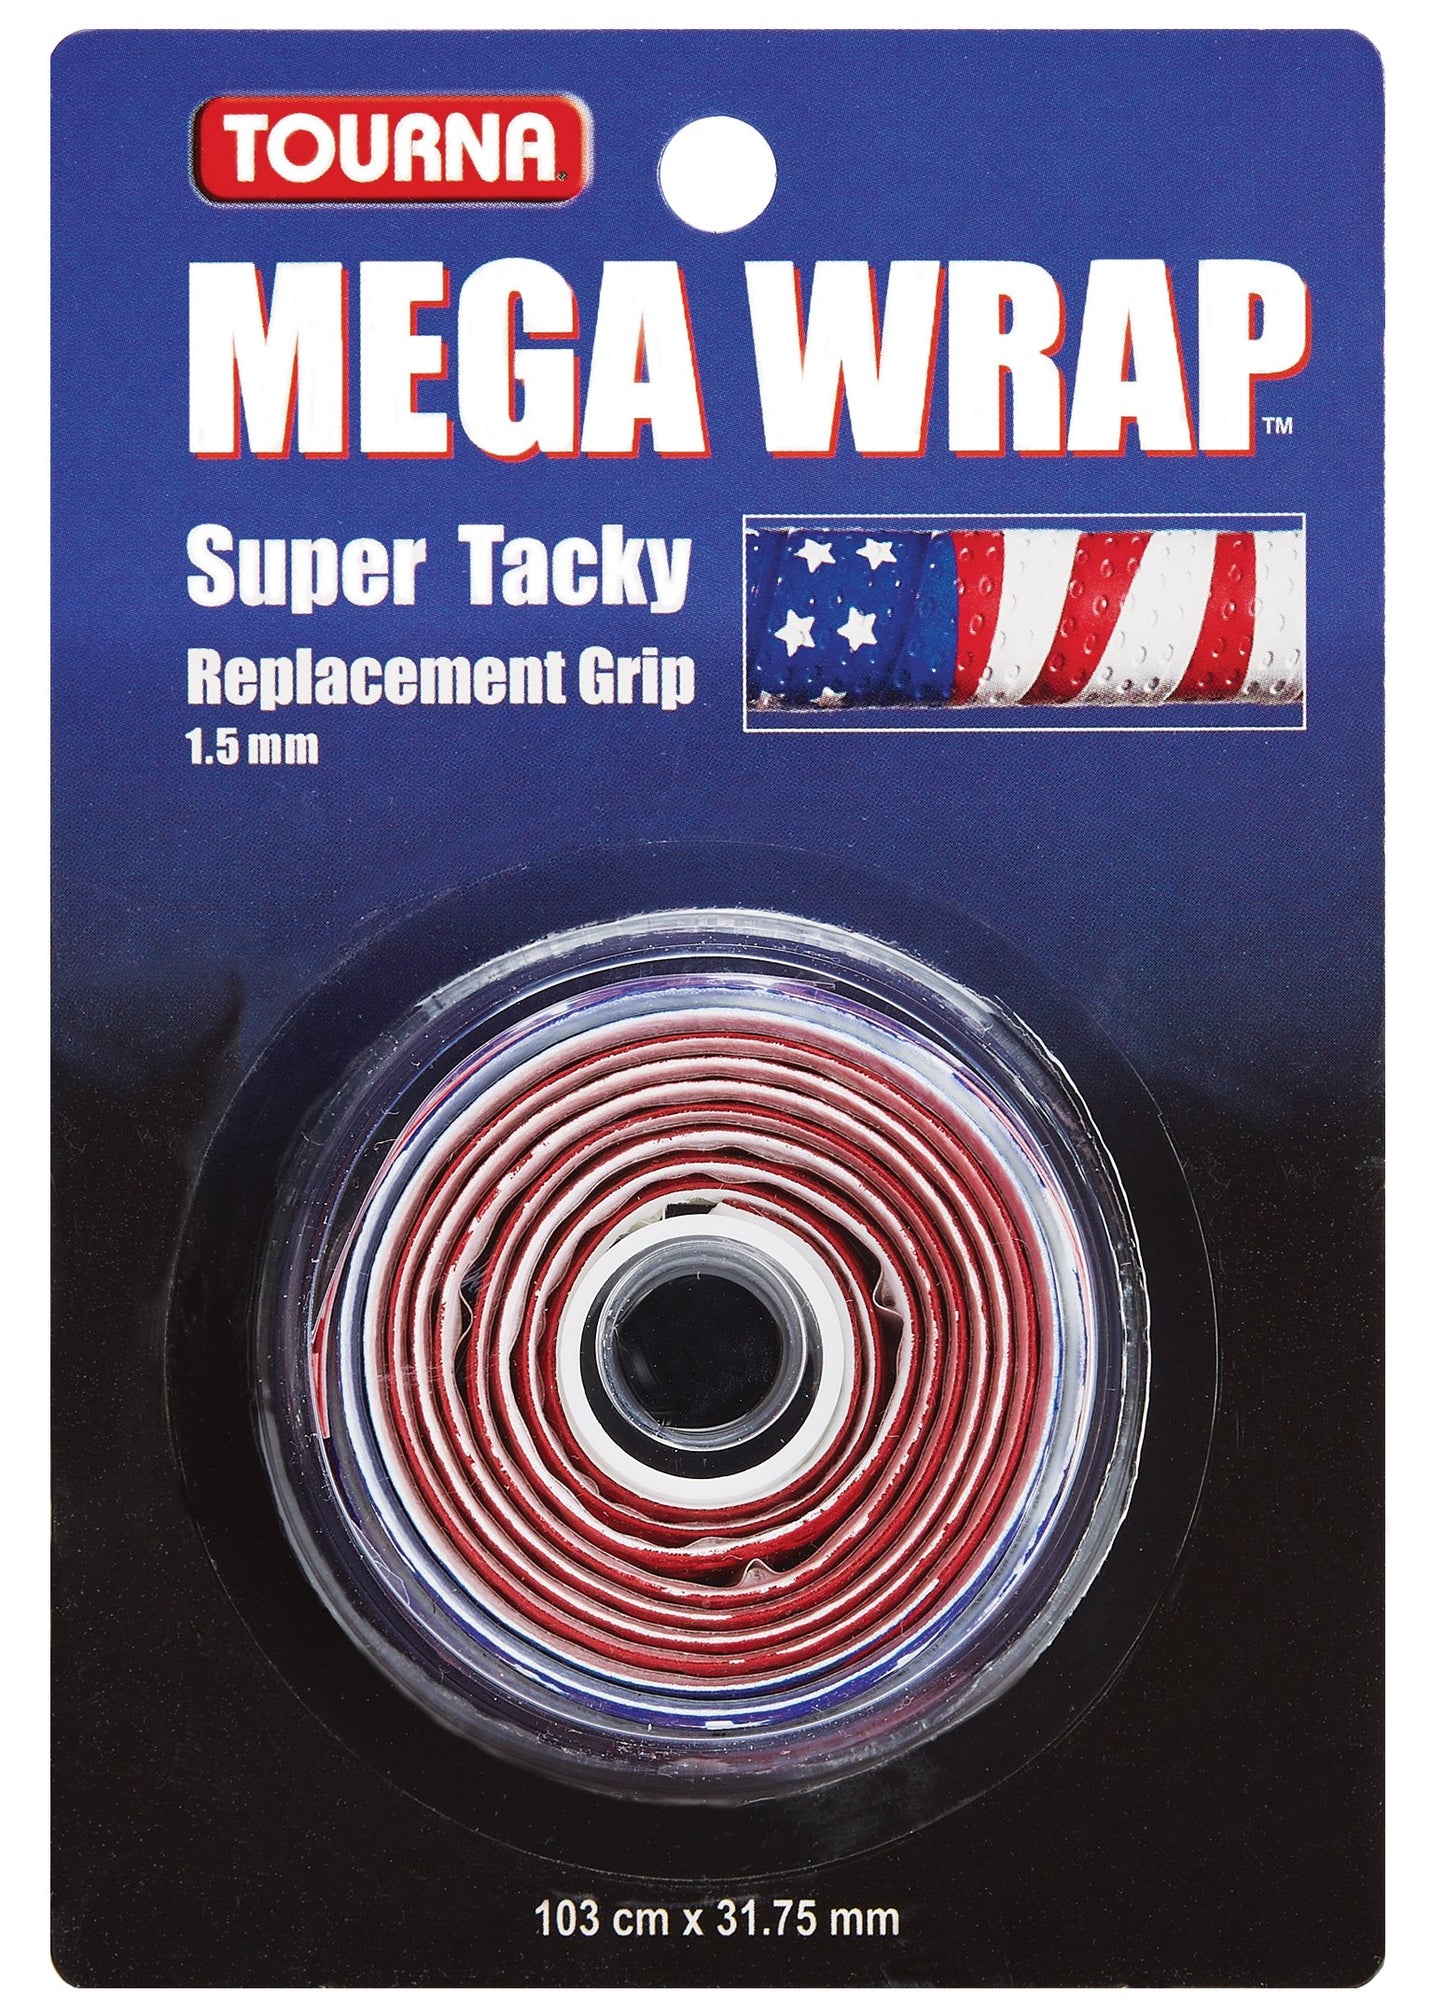 Tourna- Mega Wrap replacement grip USA